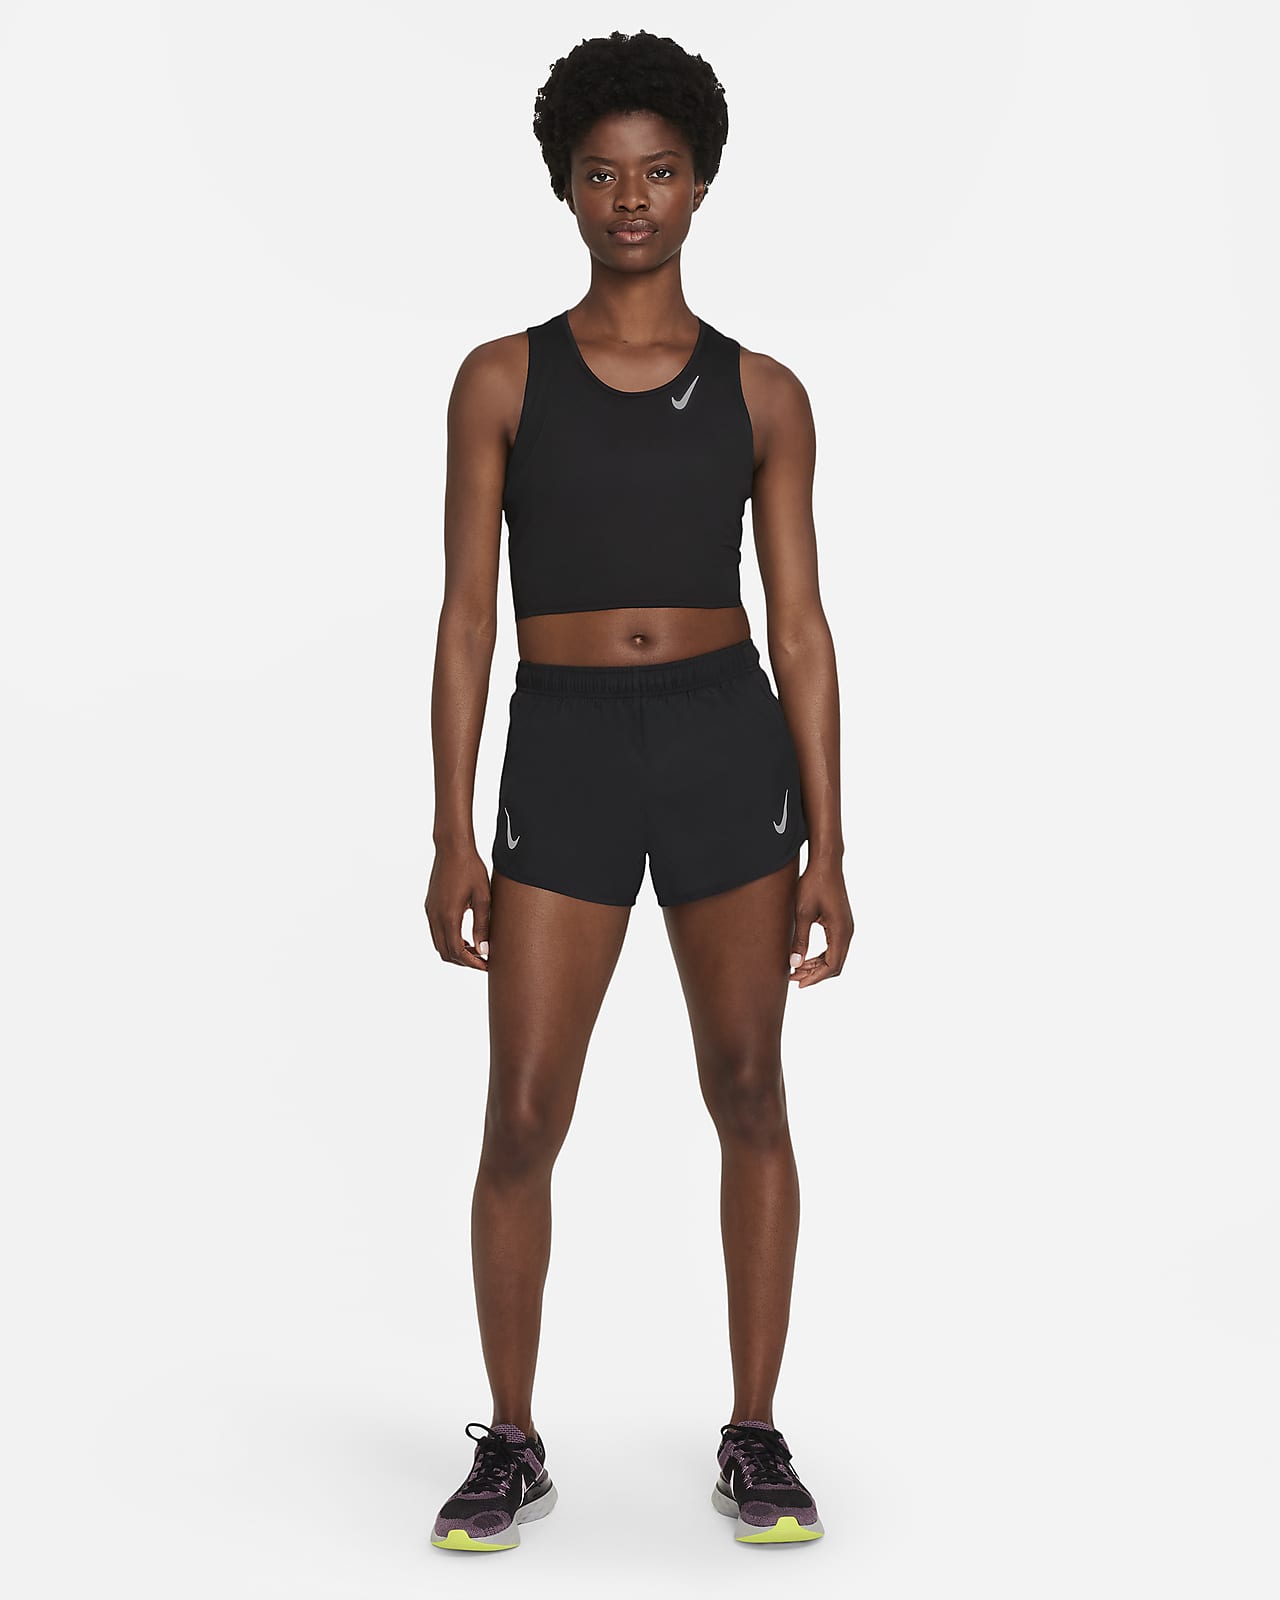 Nike Débardeur Dri-fit Starting Five Noir - Vêtements Débardeurs